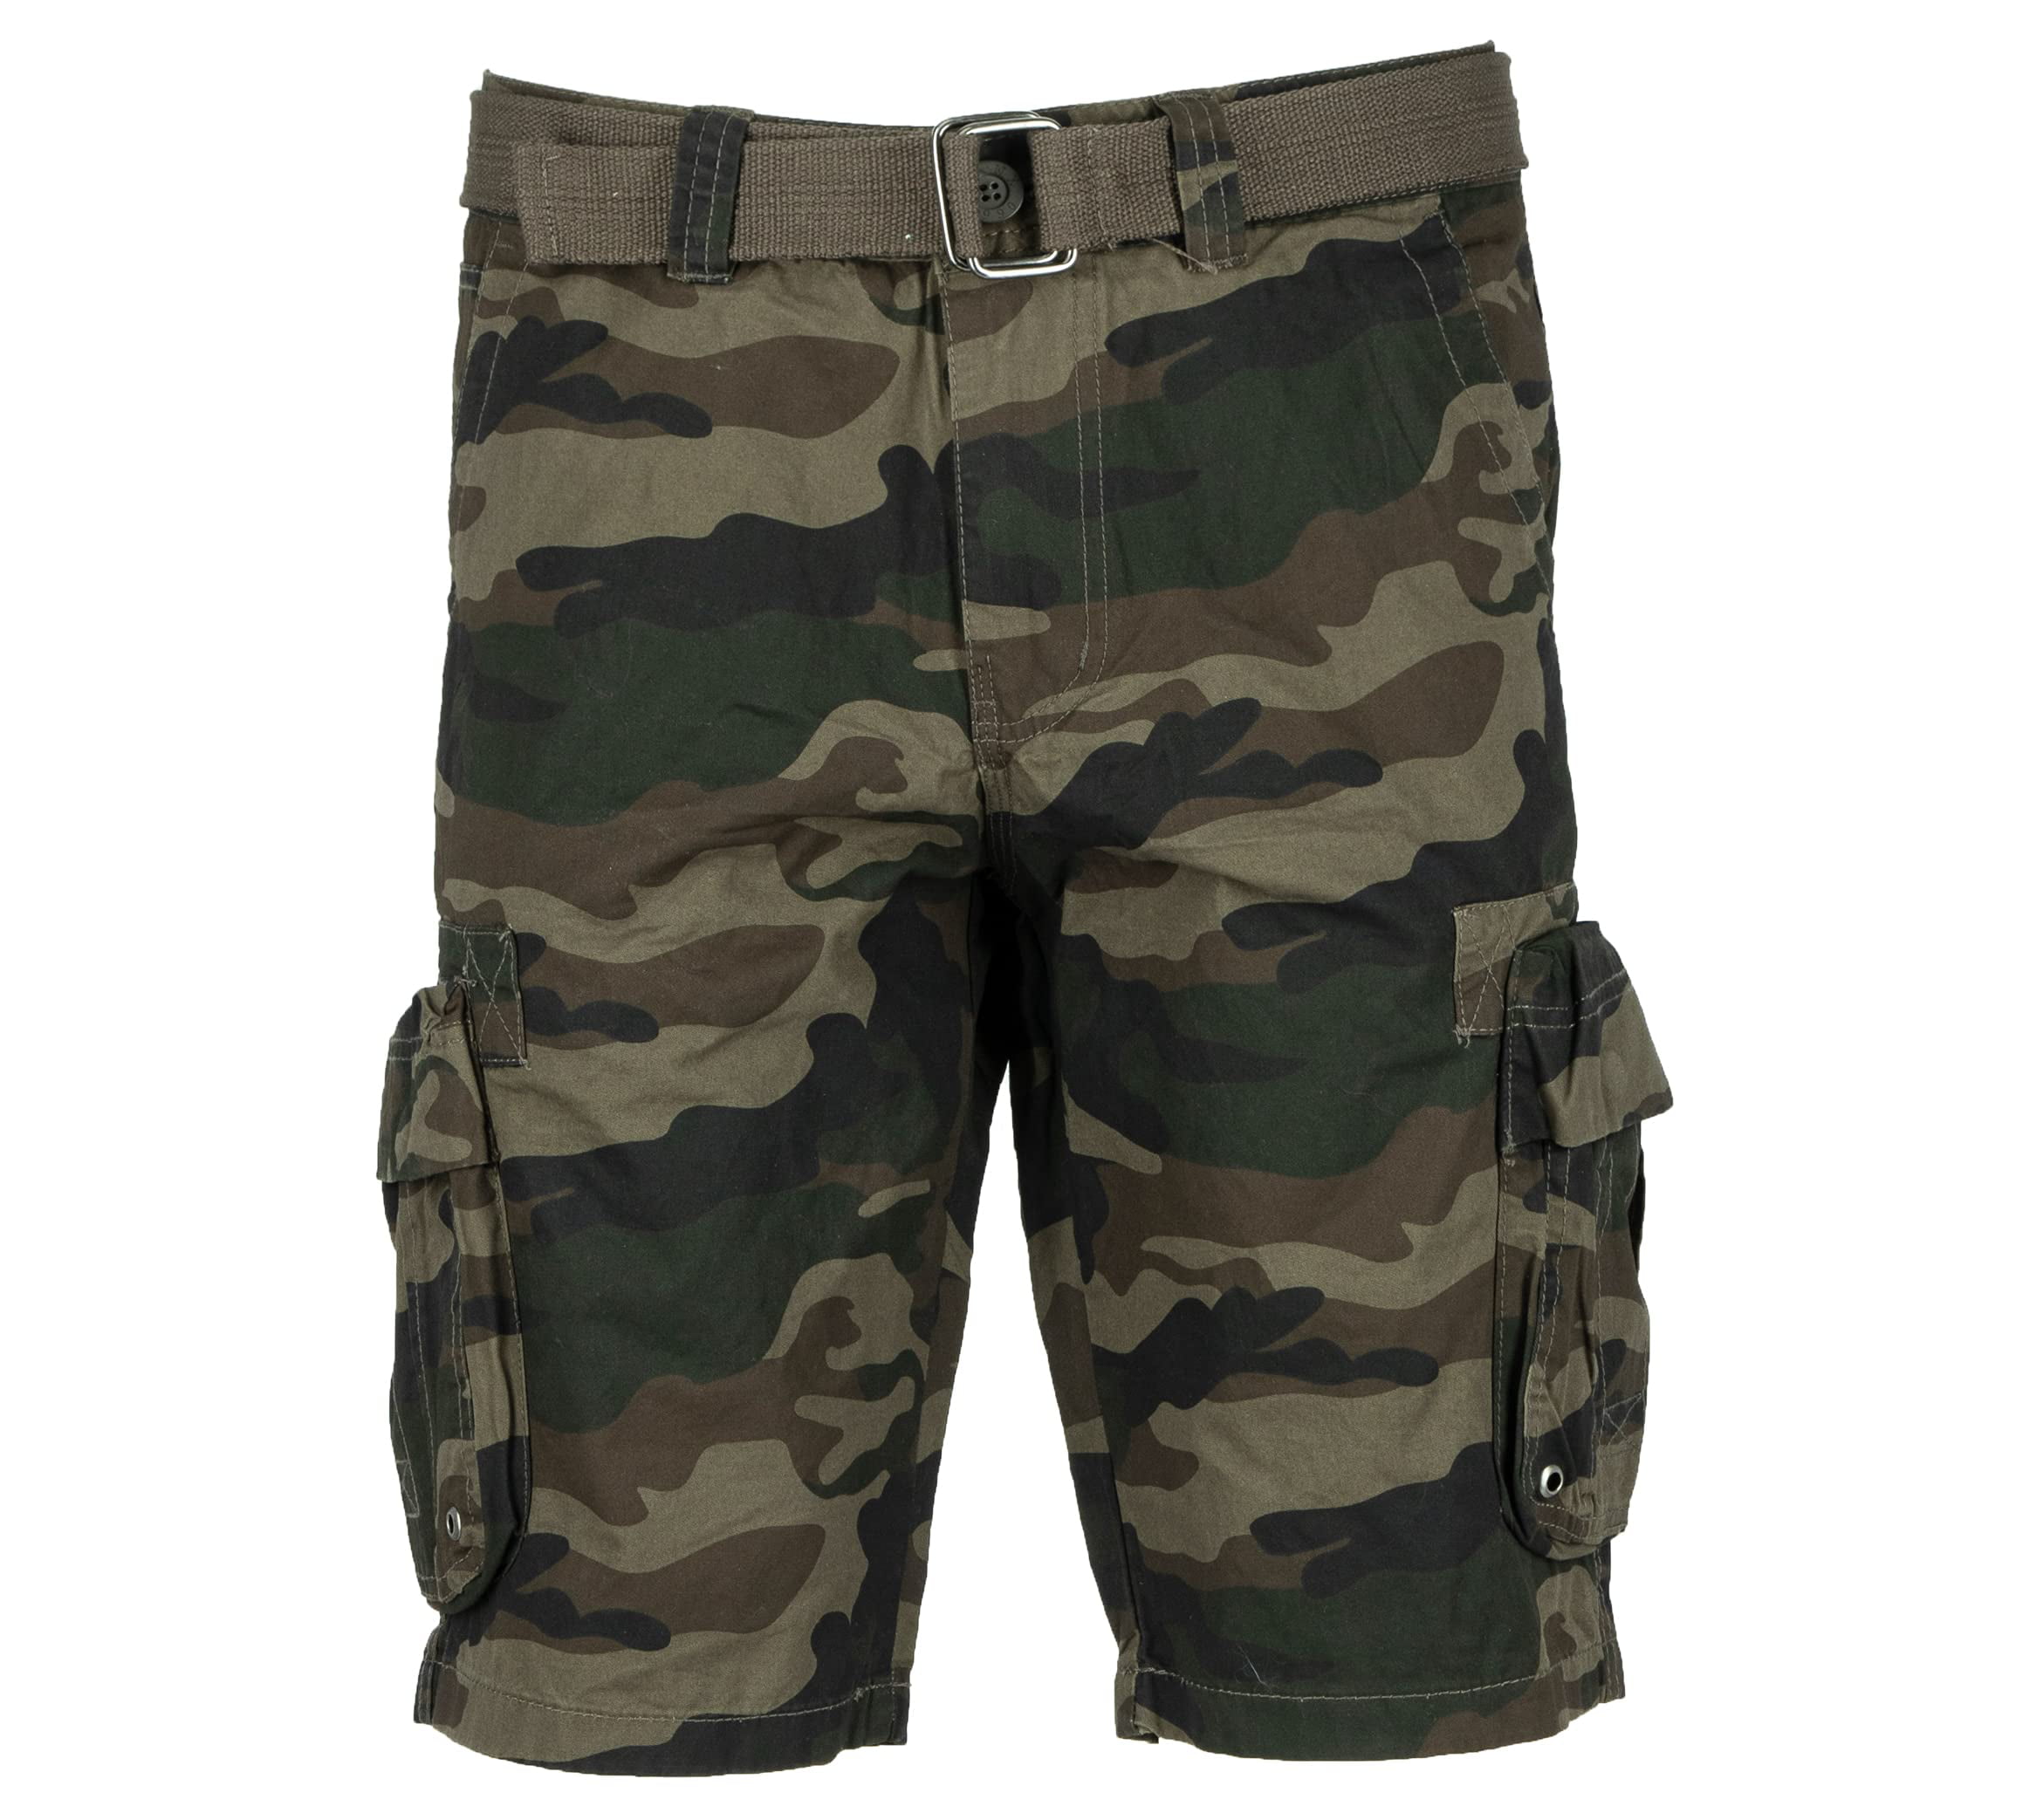 RawX Men's Belted Grommet Cargo Shorts With Hidden Snap - Walmart.com